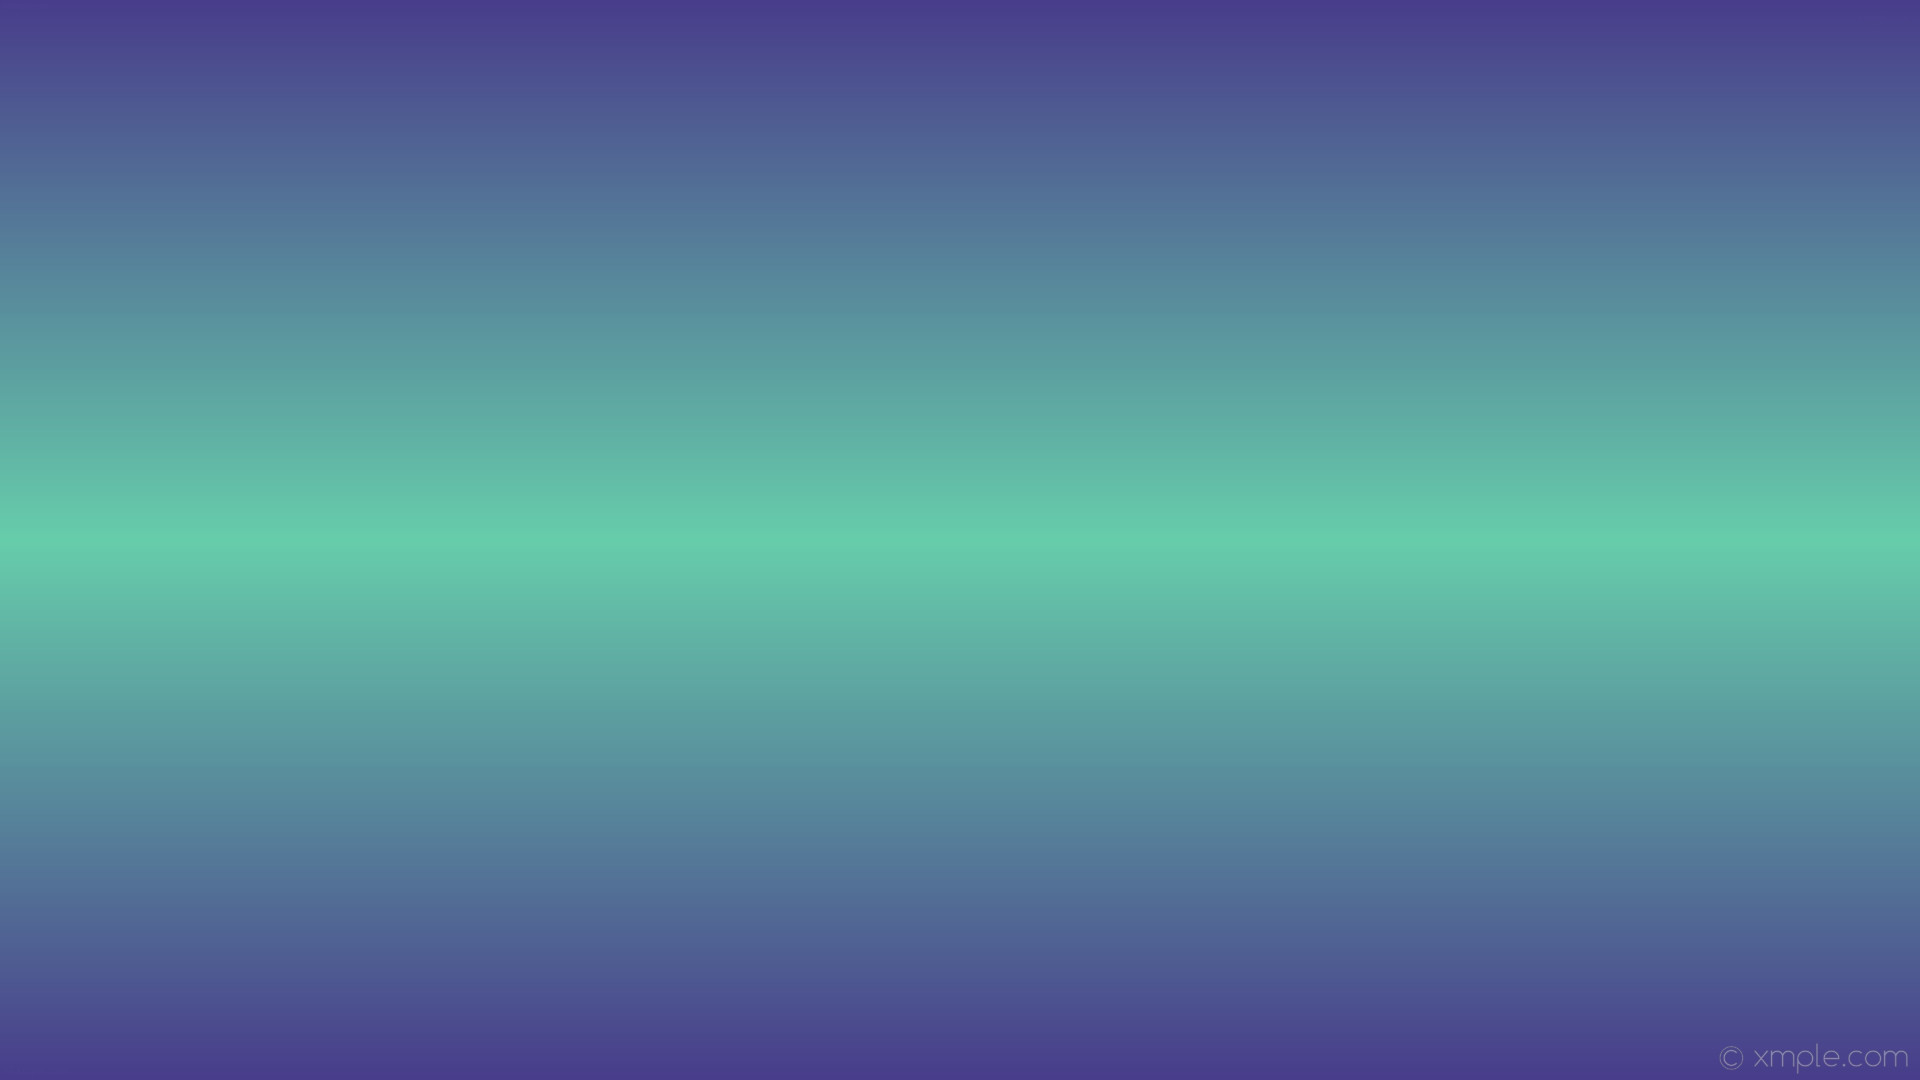 1920x1080 wallpaper gradient purple highlight green linear dark slate blue medium  aquamarine #483d8b #66cdaa 270